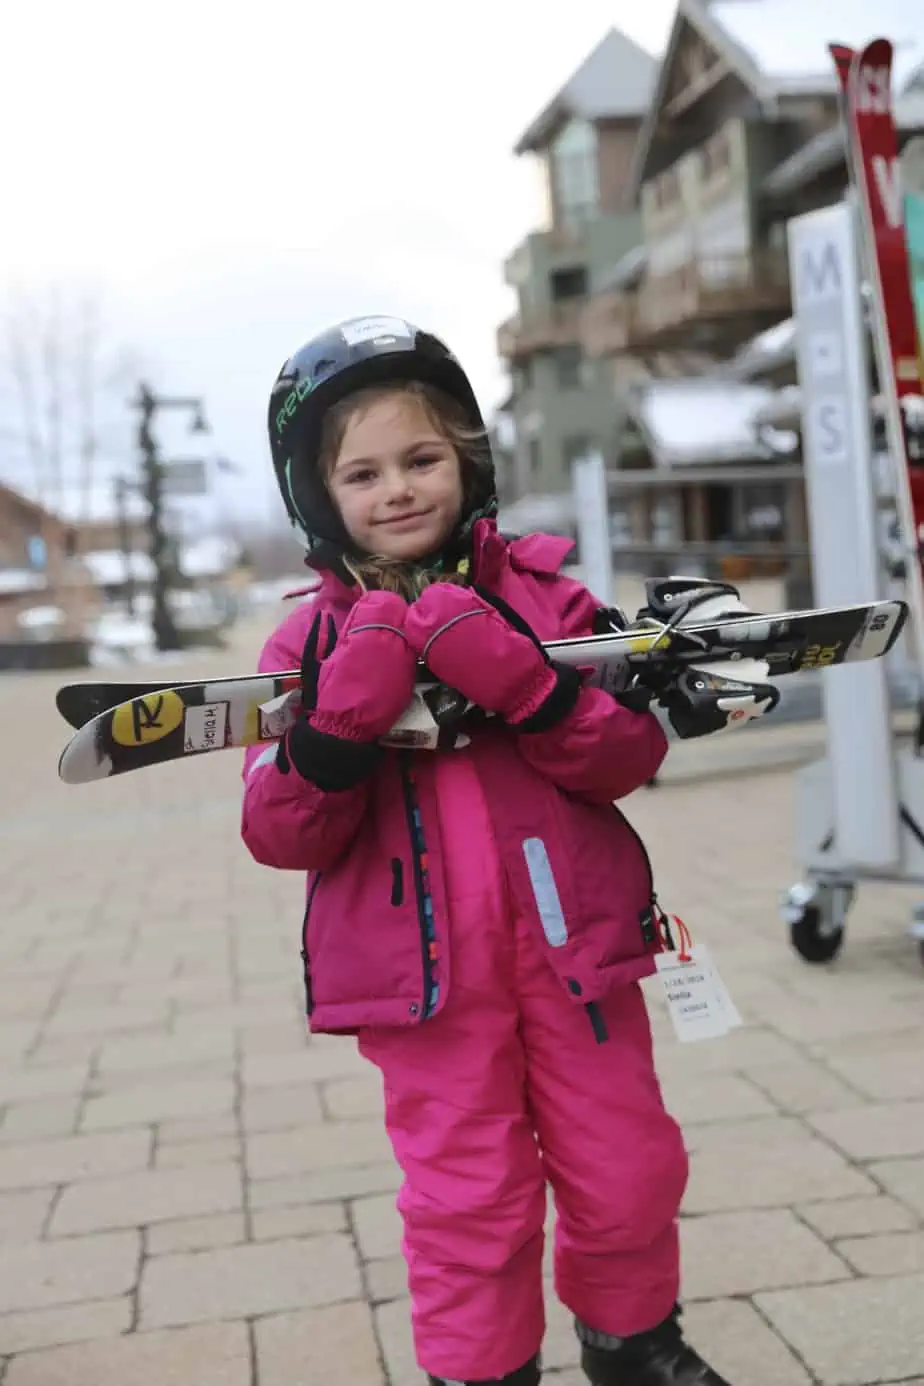 kids learn to ski